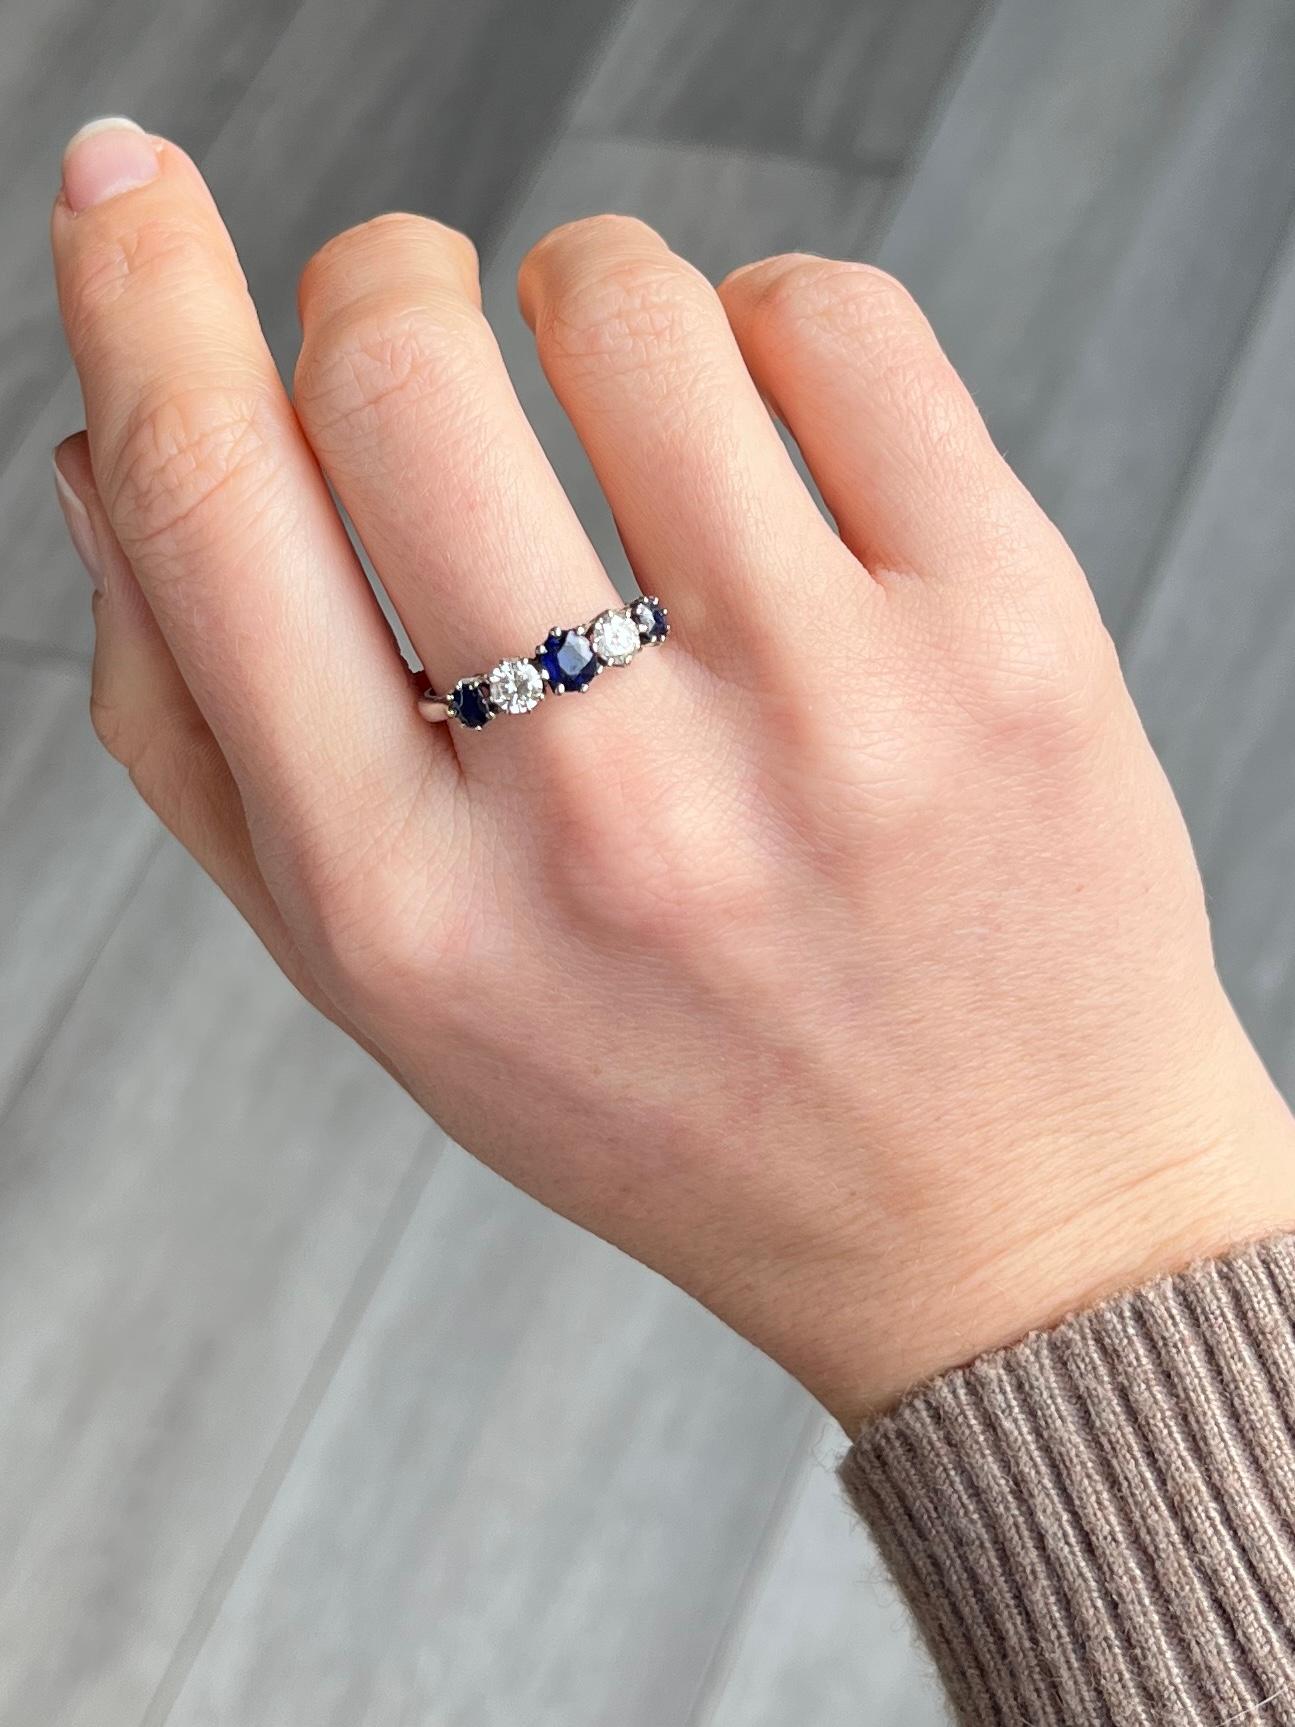 Dieser wunderschöne Ring enthält drei tiefblaue Saphire und zwei Diamanten von je 30 Pence. Der zentrale Saphir misst 40pt und die kleineren an der Außenseite des Rings messen jeweils 20pts. Der Ring ist aus 18 Karat Weißgold gefertigt. 

Ringgröße: